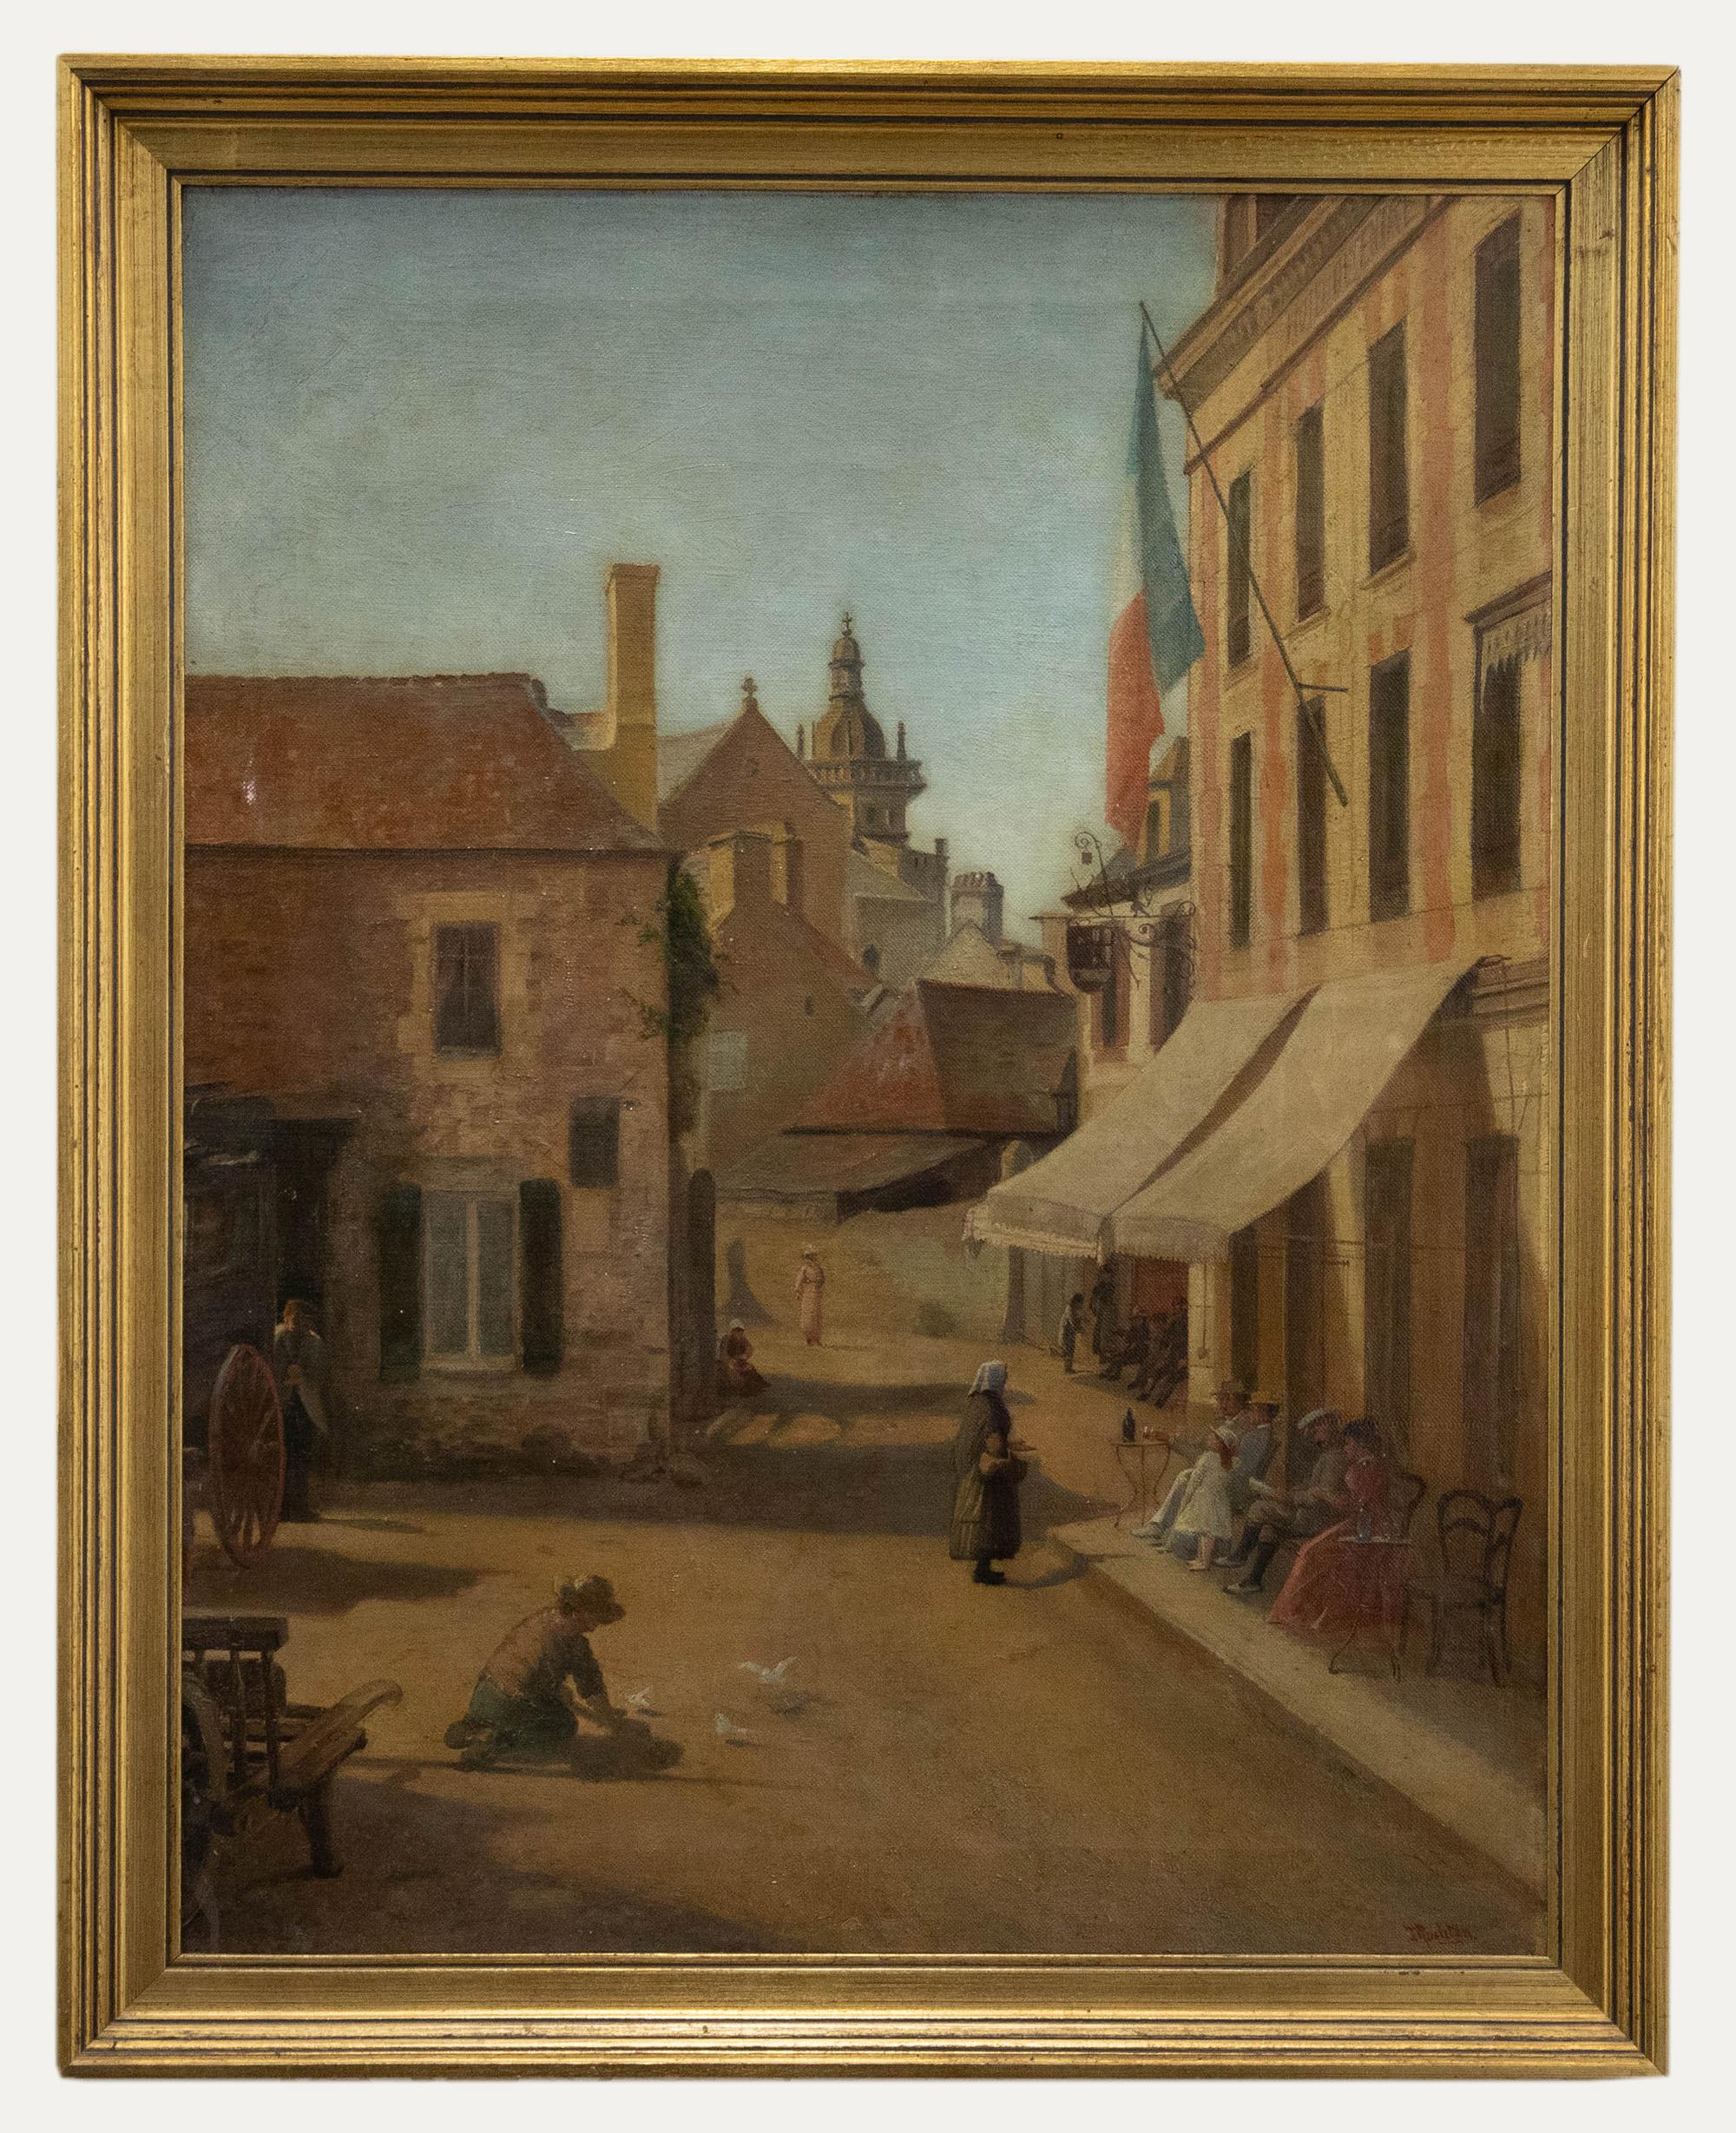 Unknown Landscape Painting - J. Rushton  - Early 20th Century Oil, Hotel du Centre, Saint Brieuc